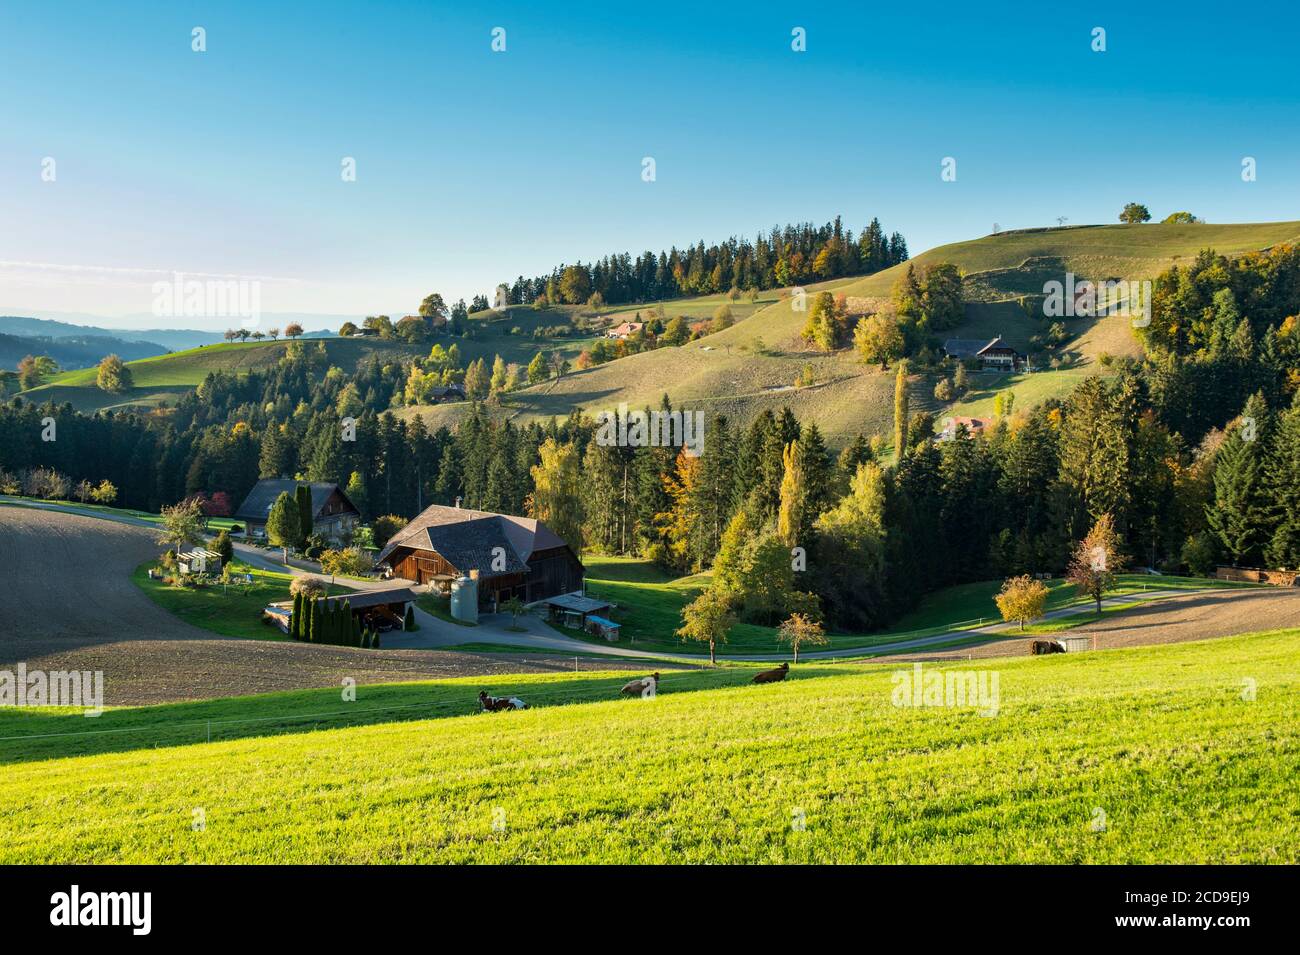 Svizzera, Cantone di Berna, Valle dell'Emme, ripido paesaggio collinare, tipico della regione dell'Emmental, punteggiato da tradizionali fattorie in legno nei pressi di Eggiwil Foto Stock